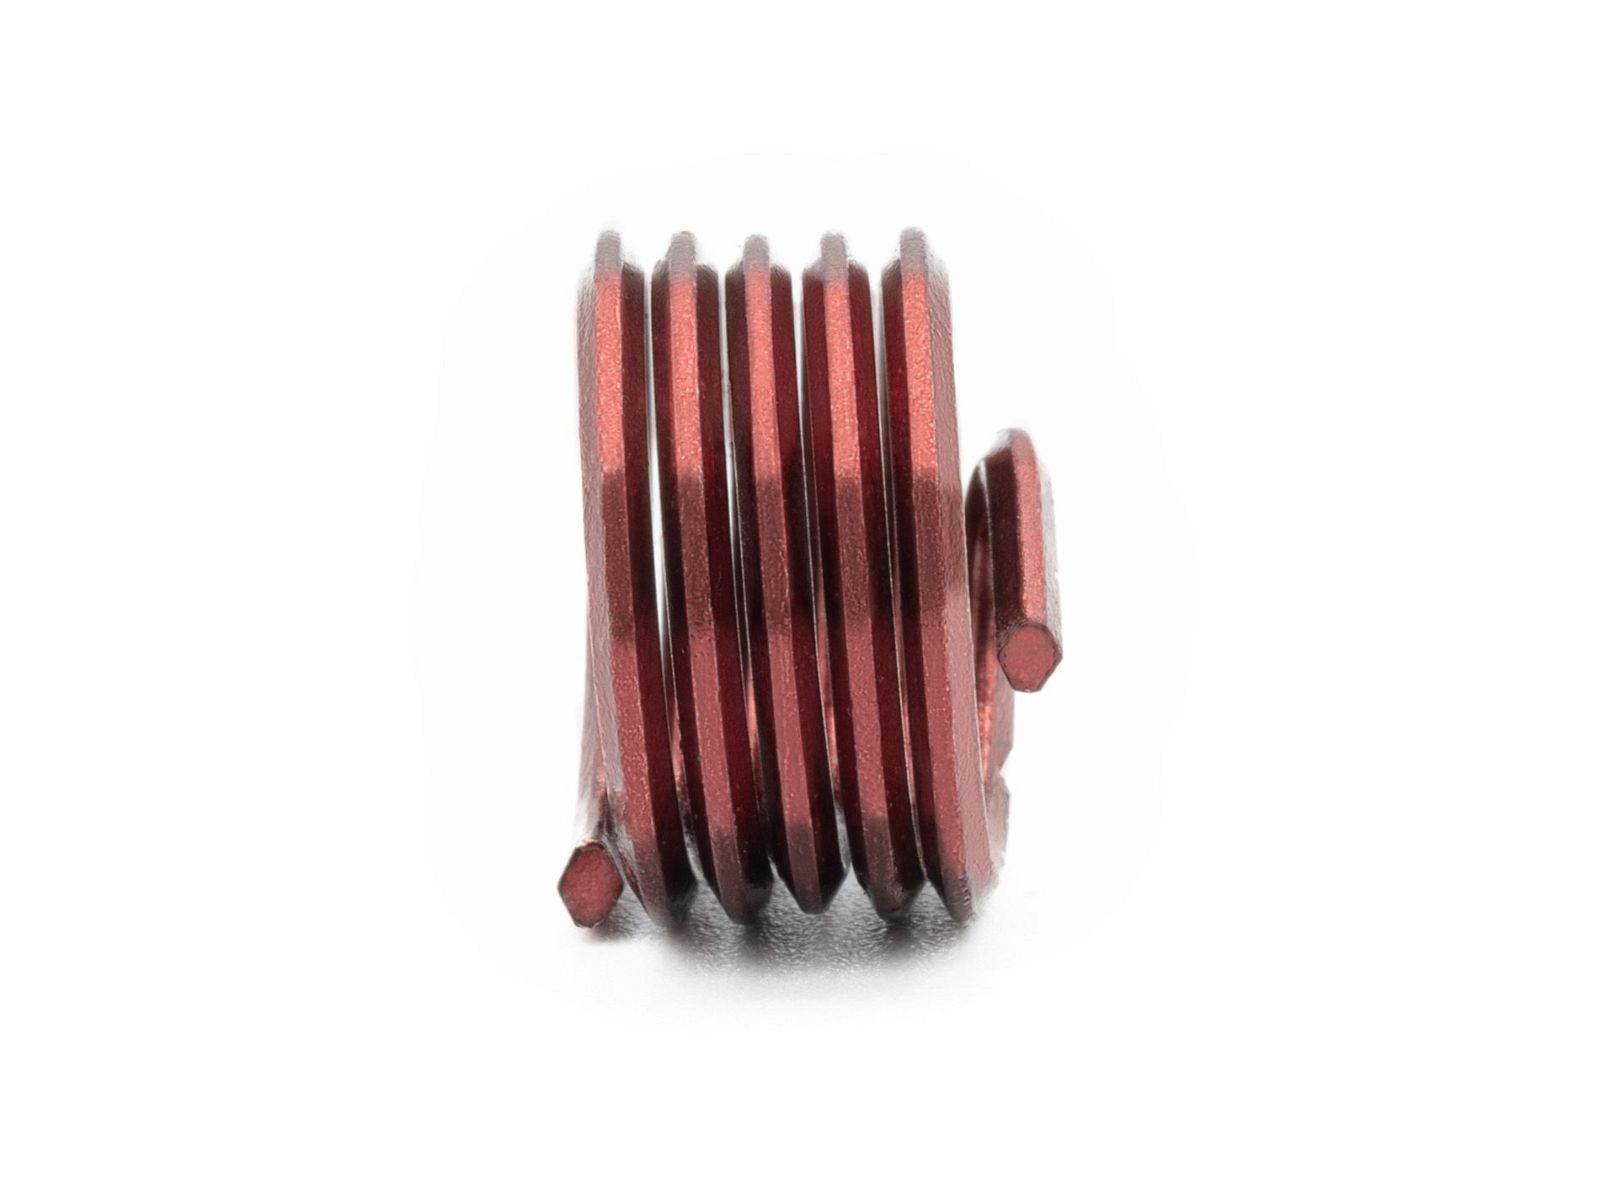 BaerCoil Drahtgewindeeinsätze UNC 1“ x 8 - 1,0 D (25,4 mm) - screw grip (schraubensichernd) - 10 Stück